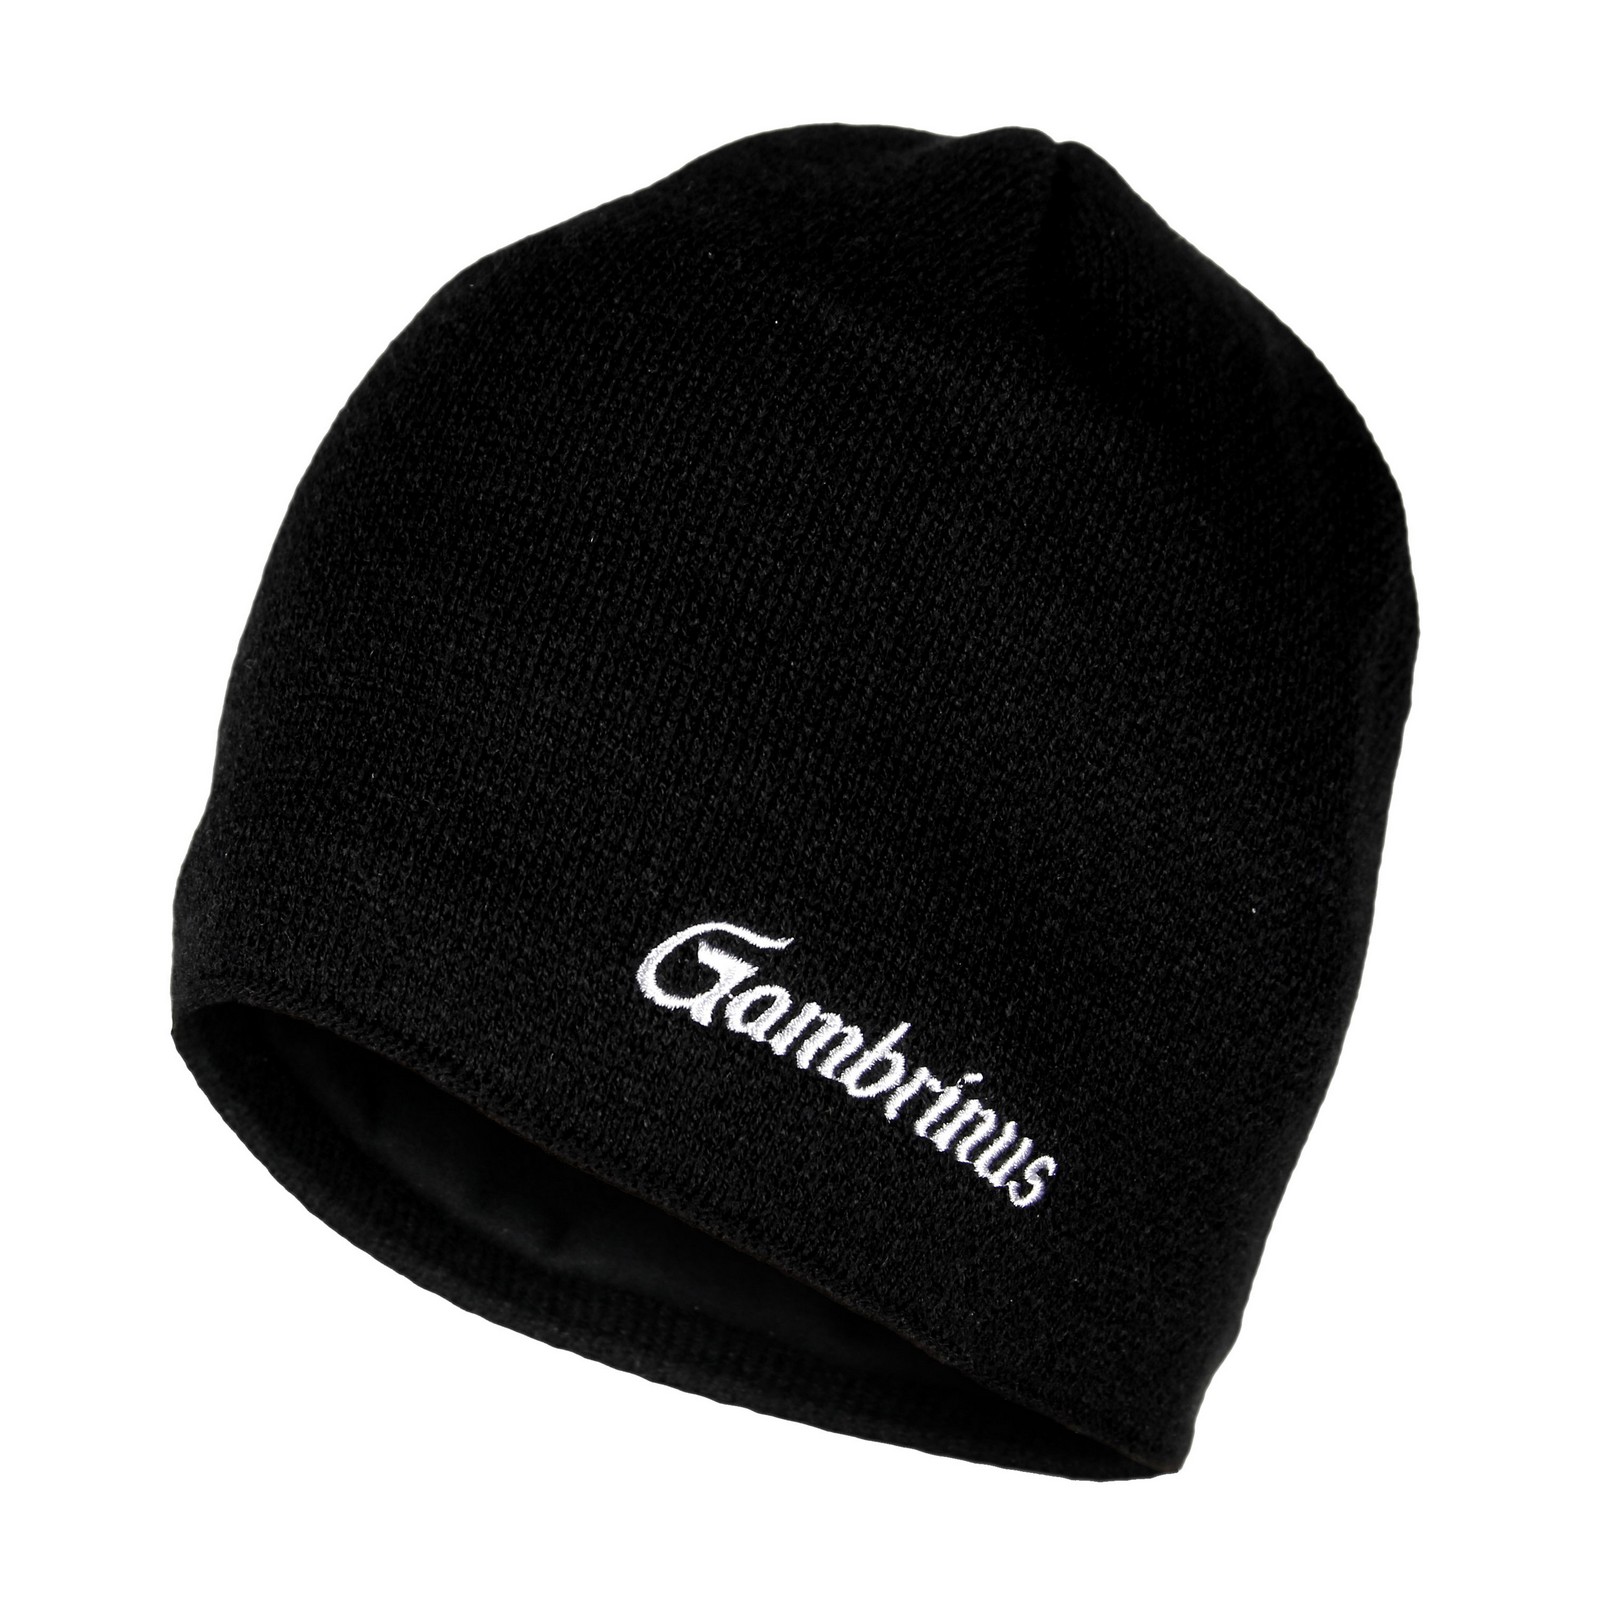 Gambrinus cap black